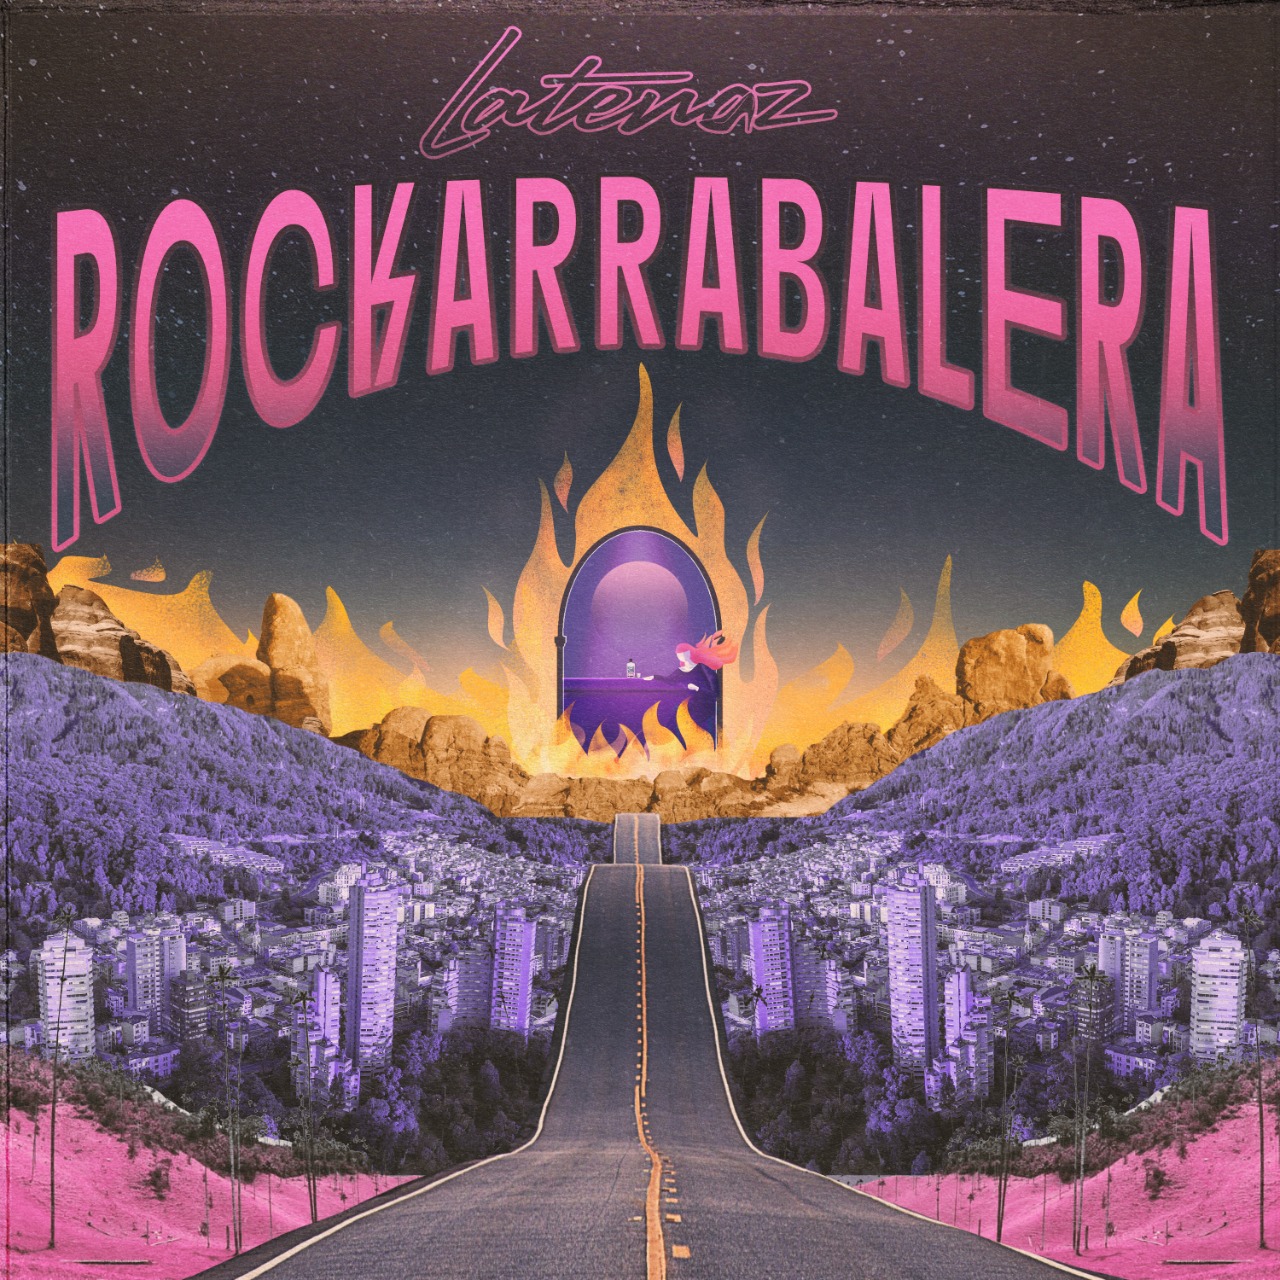 Hablamos con LaTenaz, de Colombia, sobre el arrabal y el rock de su nuevo álbum: Rockarrabalera